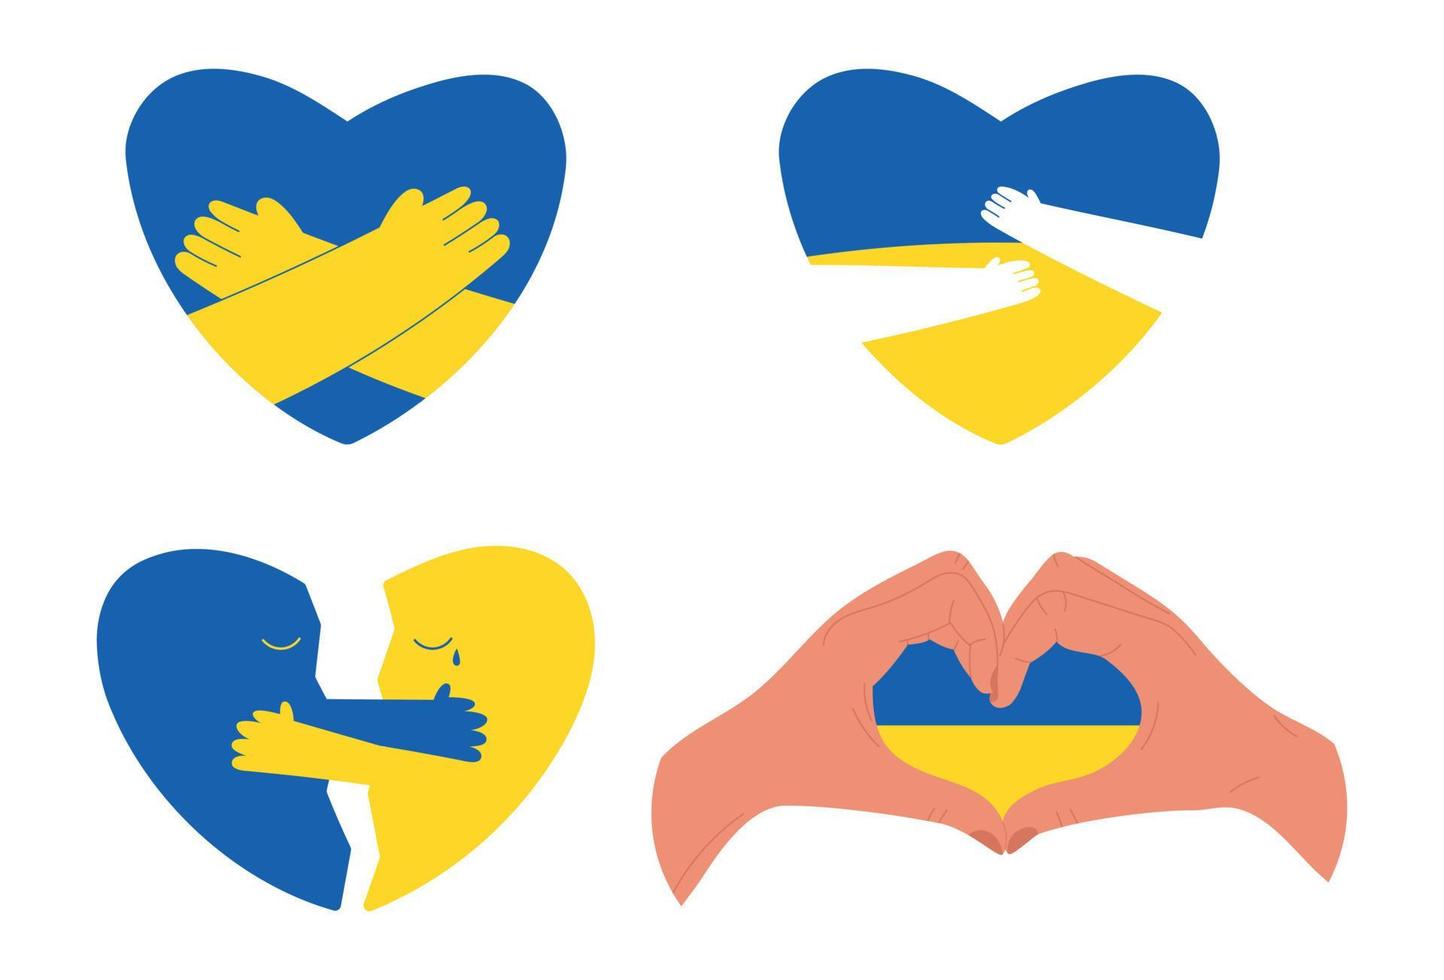 set di cuori nei colori della bandiera ucraina che abbracciano e mostrano amore e supporto, illustrazione vettoriale piatta isolata su bianco. concetti di pace e aiuto umanitario durante la guerra in ucraina.